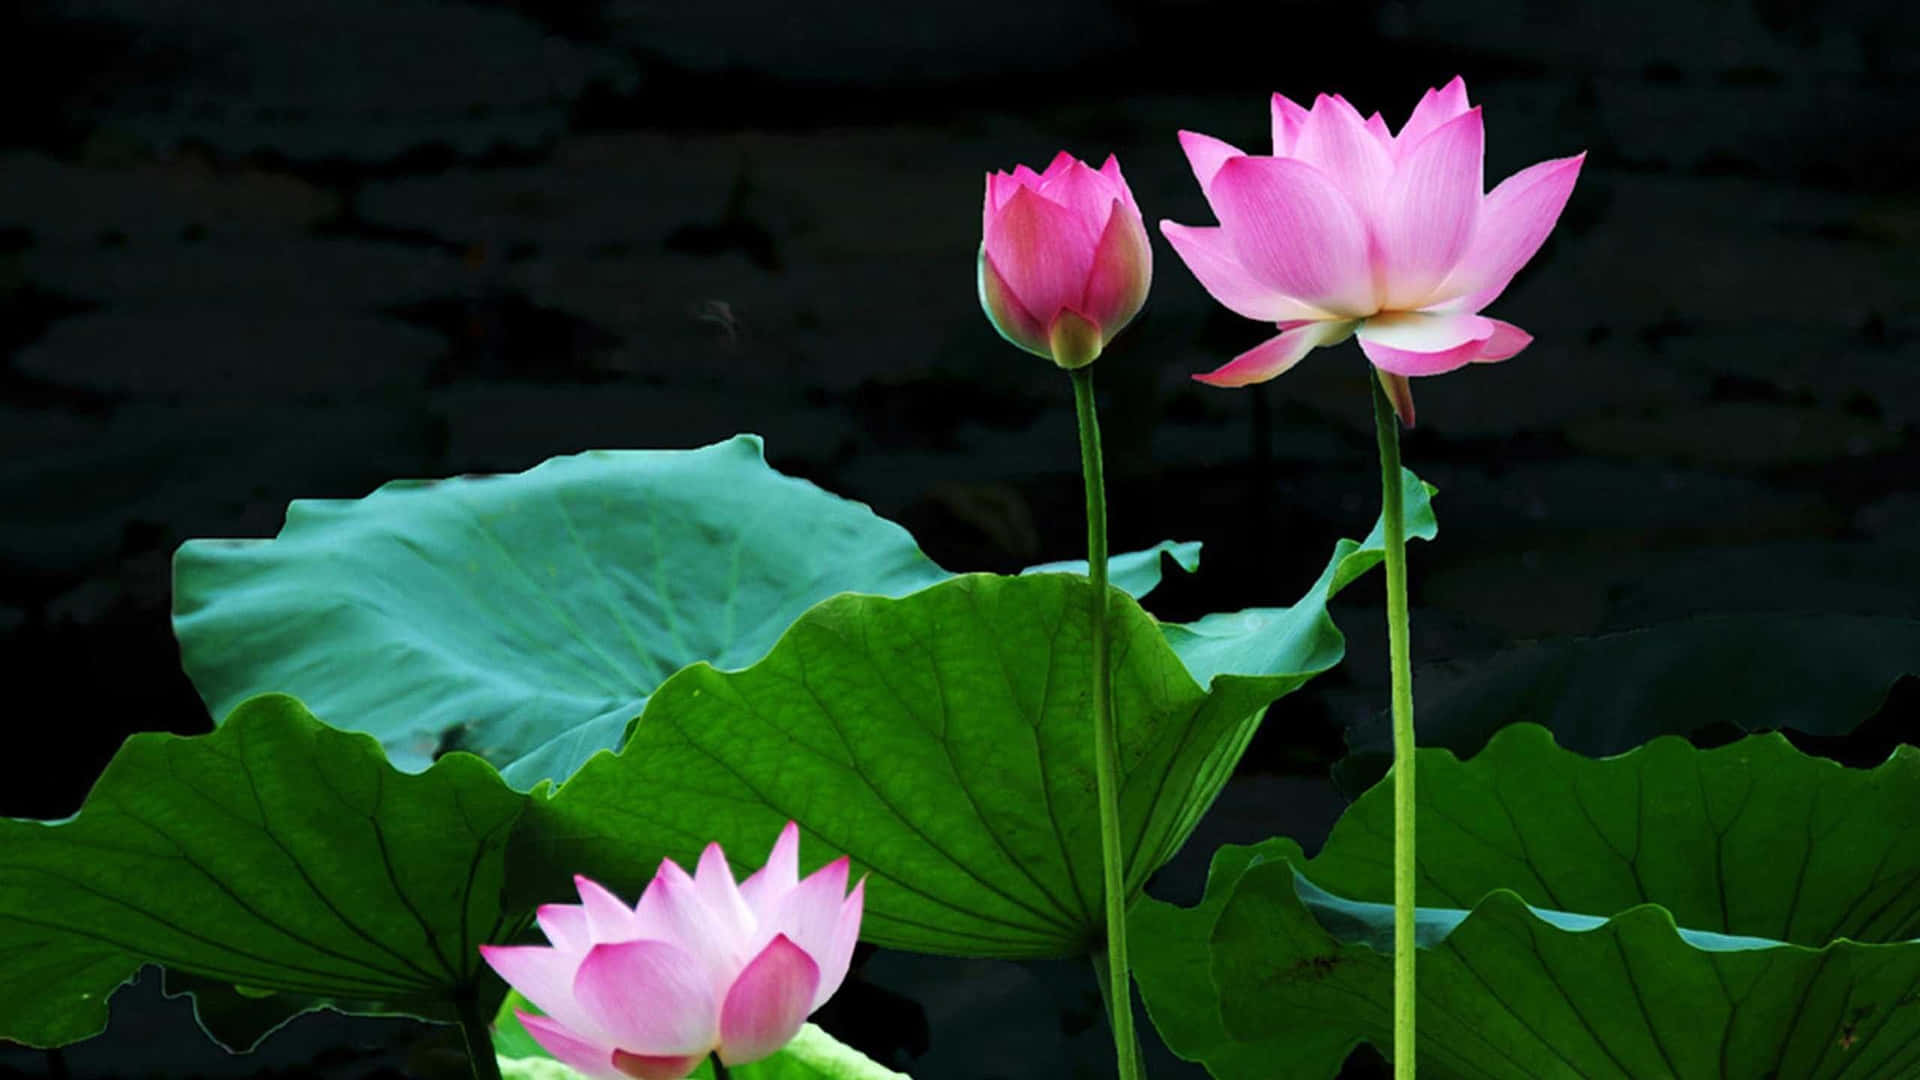 Förundradig Över Skönheten Hos En Livlig, Rosa Lotusblomma I Full Blomning.